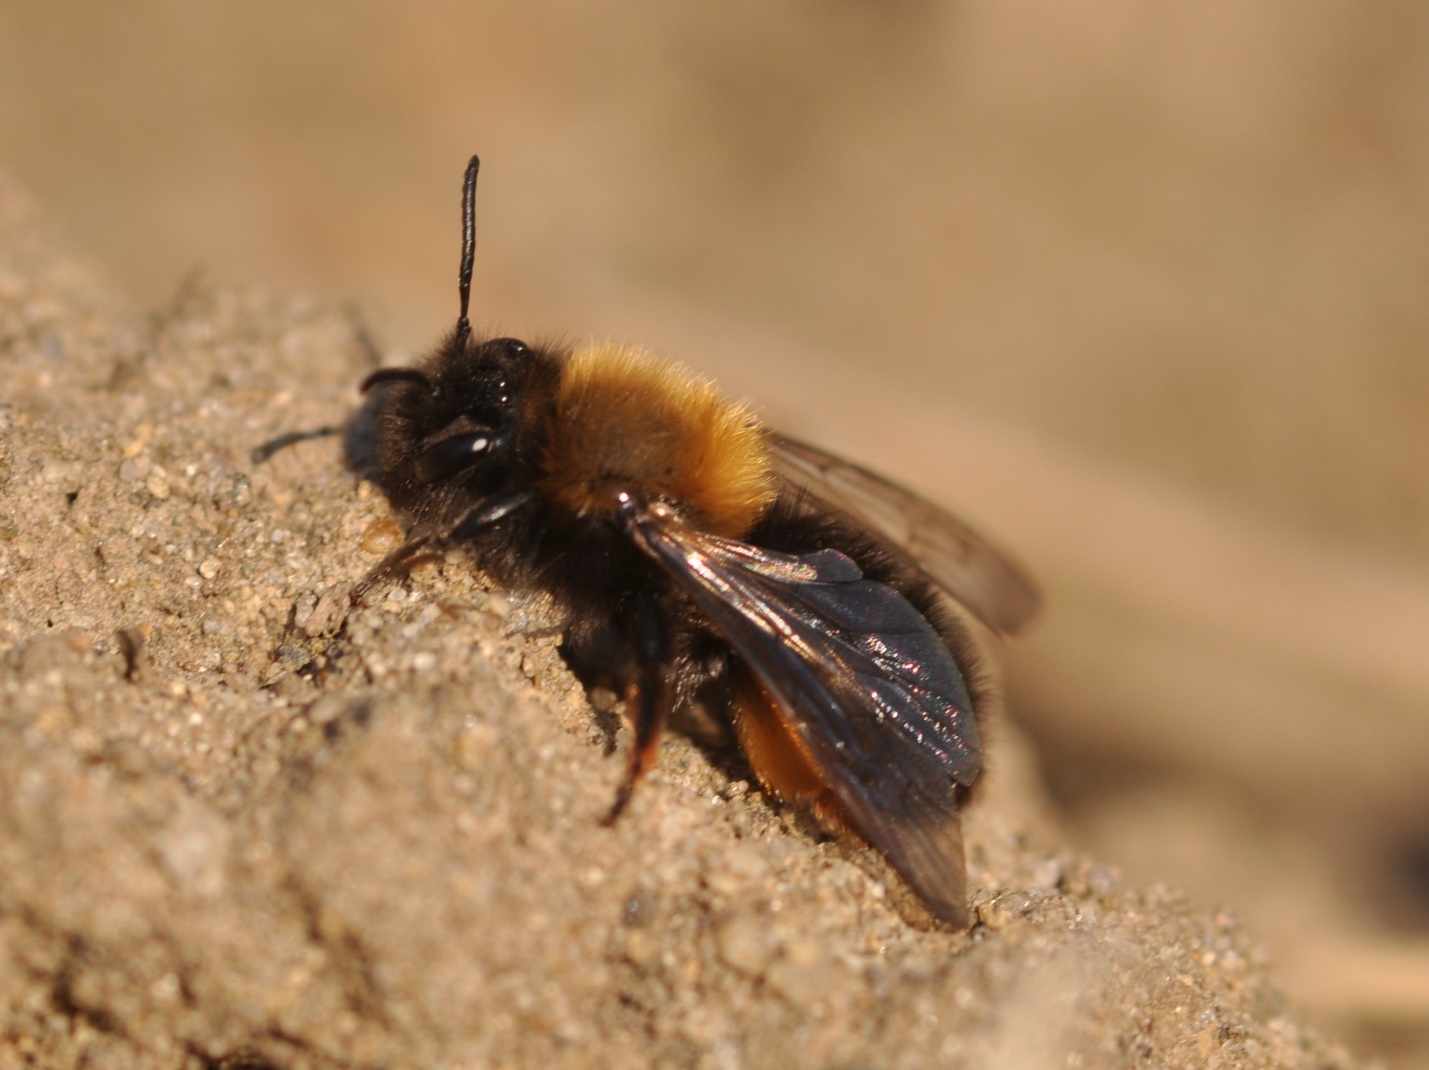 Как избавиться от земляных пчел: виды, польза и вред, описание основных химических и народных методов борьбы с ними, их плюсы и минусы